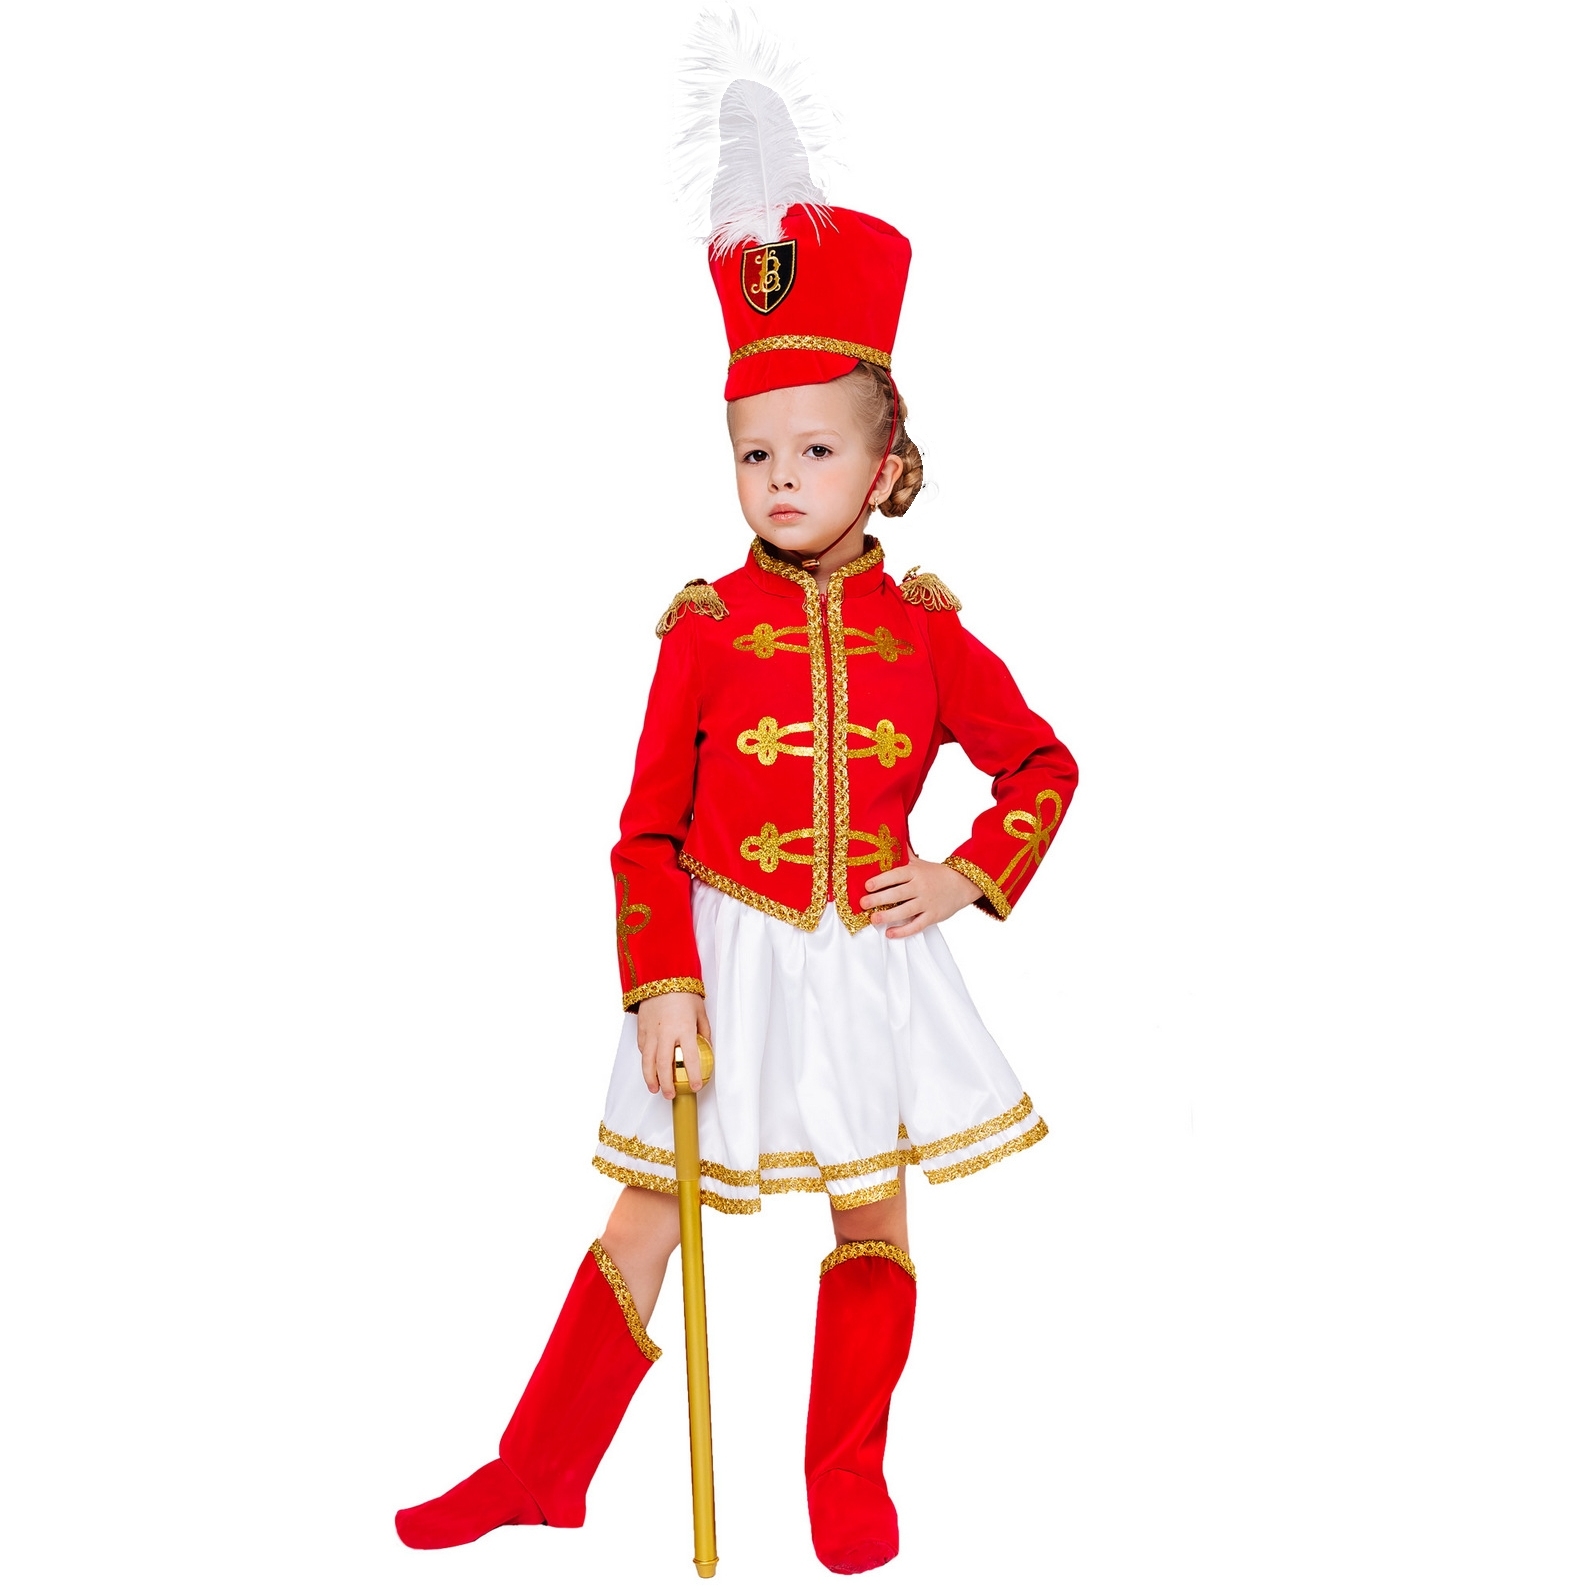 Карнавальный костюм "Мажоретка" (мундир, юбка, кивер, сапоги, трость) размер 128-64